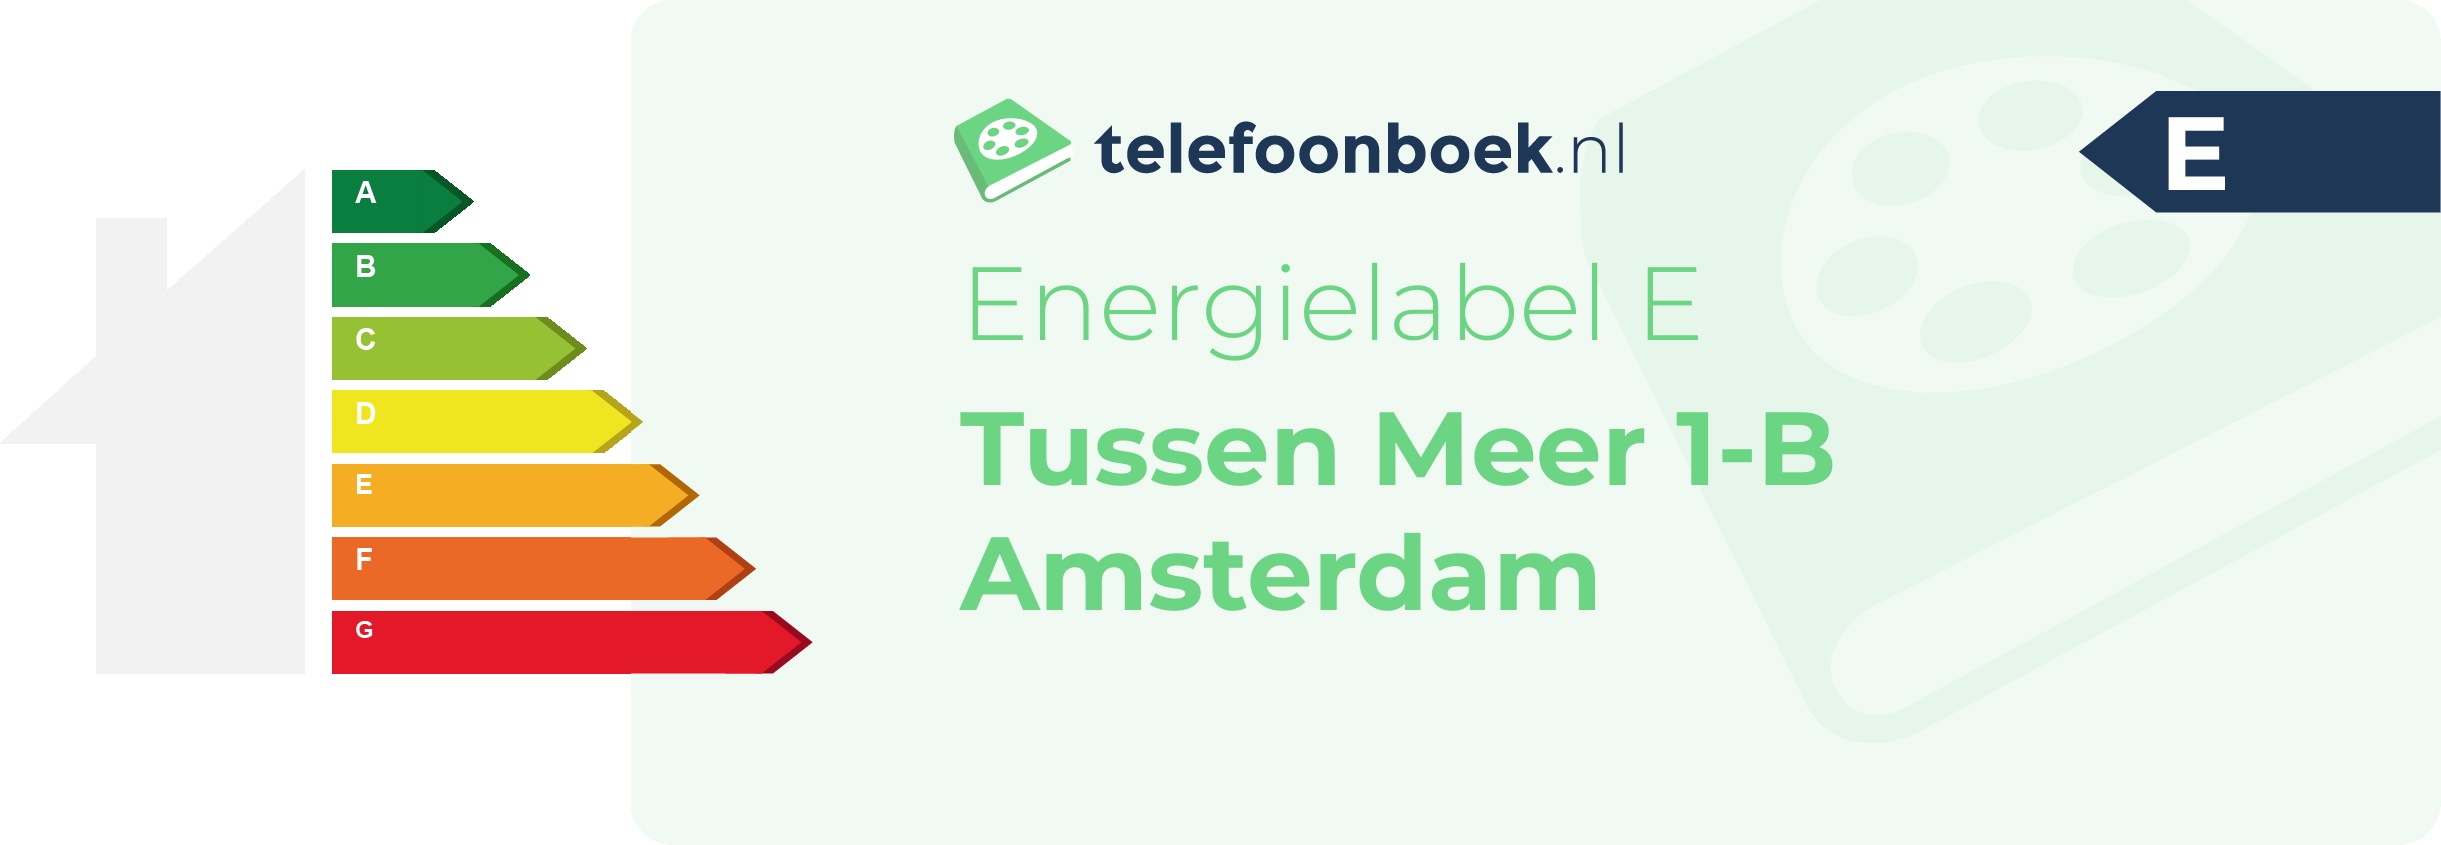 Energielabel Tussen Meer 1-B Amsterdam